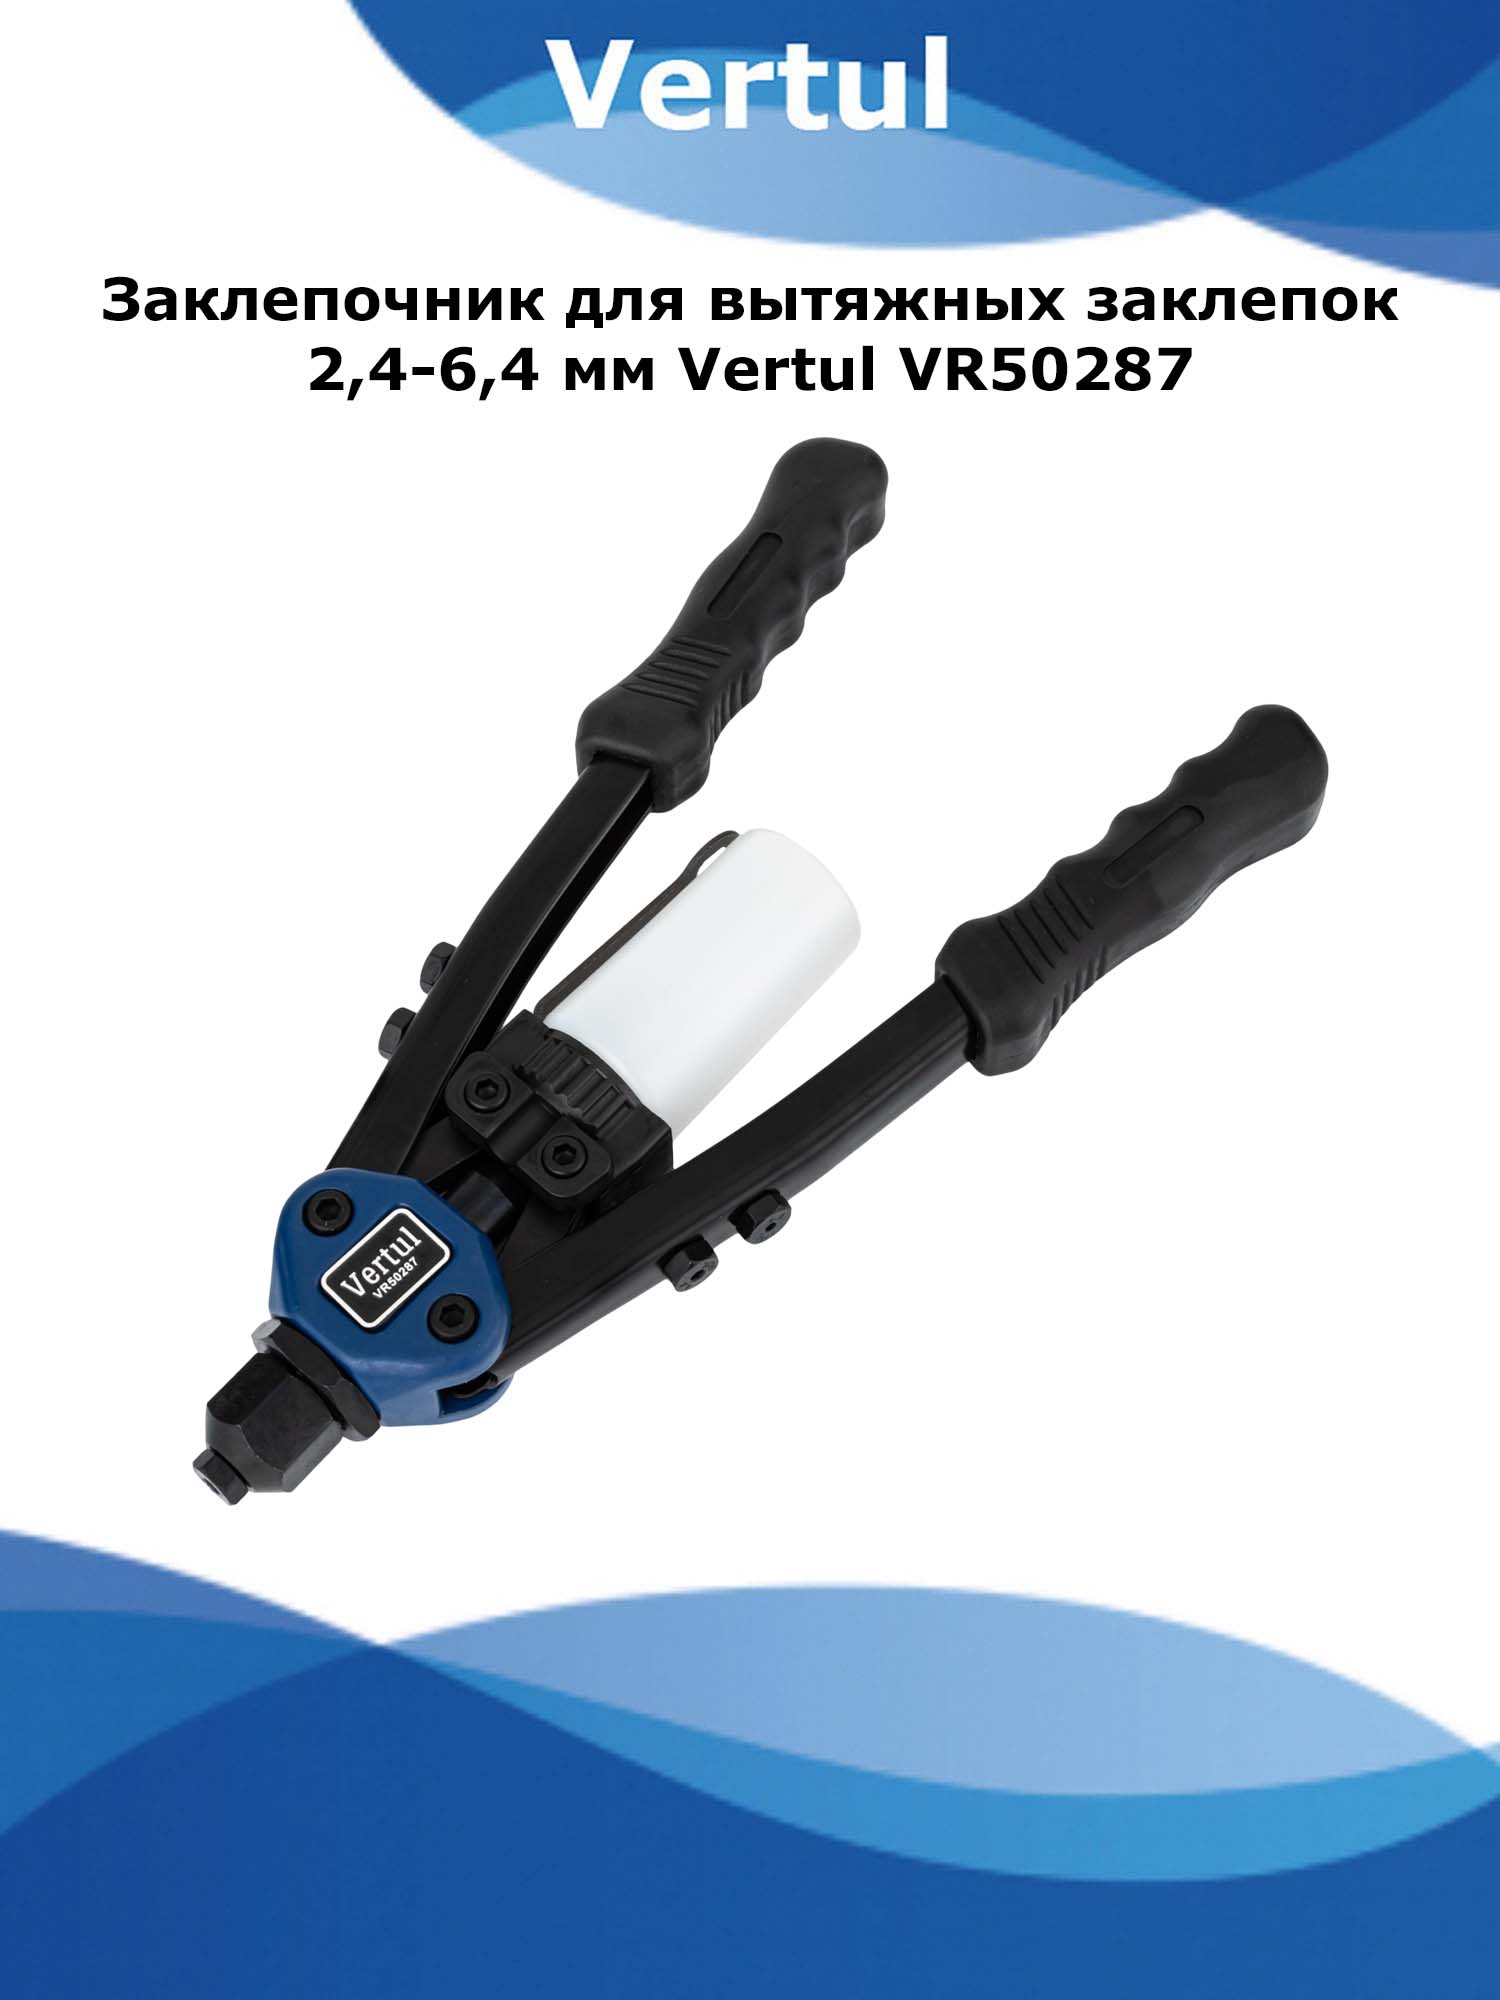 Заклепочник для вытяжных заклепок 2.4-6.4 мм Vertul VR50287 458163 заклёпочник универсальный для вытяжных и резьбовых заклёпок